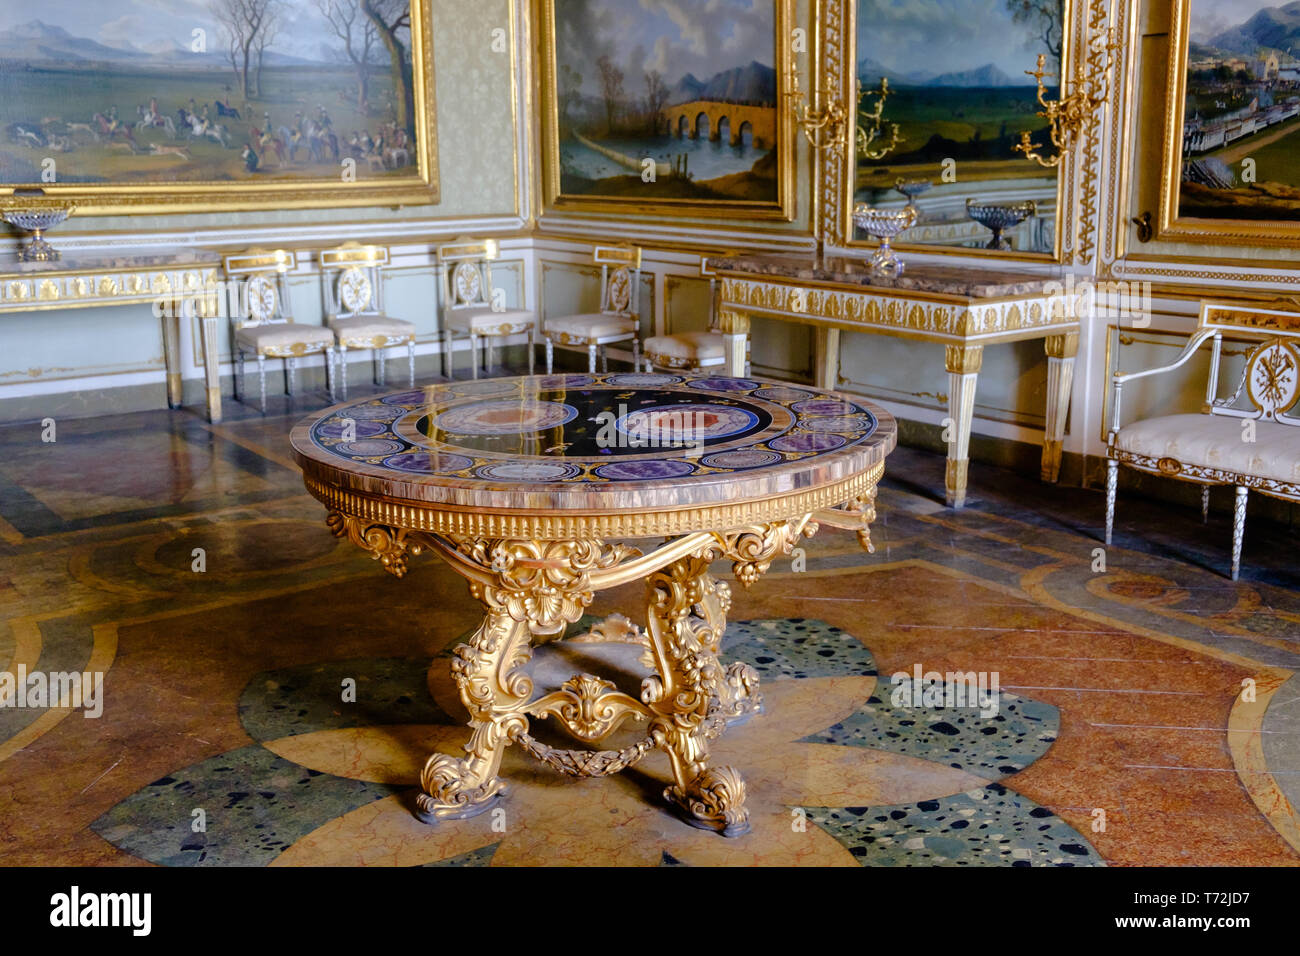 Tableau néo-baroque avec une pierre dure une table se trouve dans un appartement royal de la "Reggia di Caserta'. Peintures et meubles compléter la richesse. Banque D'Images